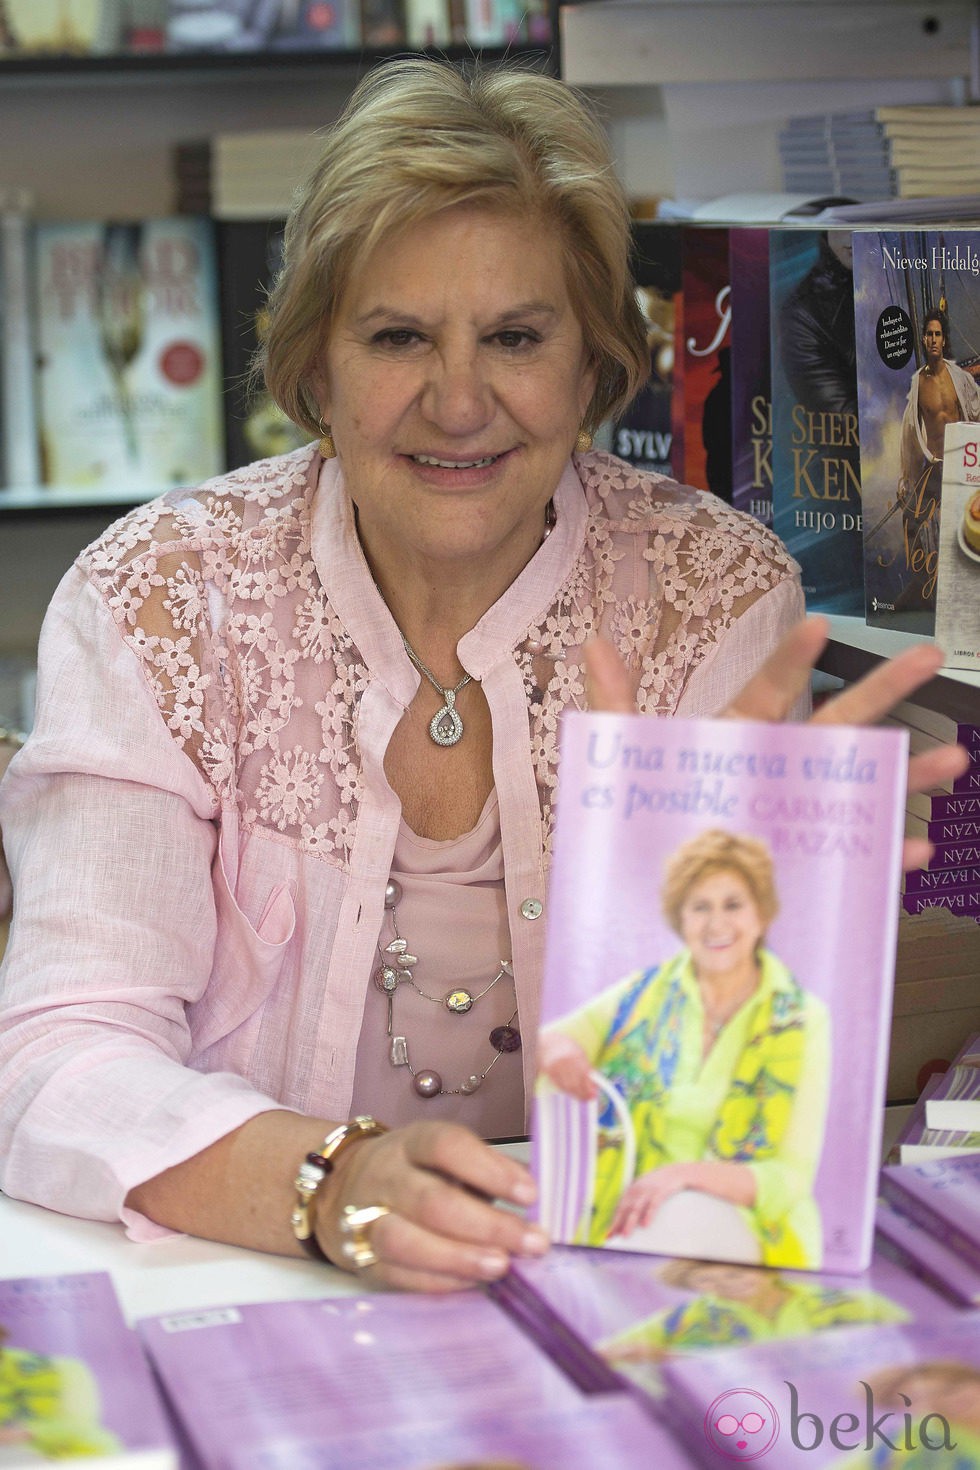 Carmen Bazán firma ejemplares de 'Una nueva vida es posible' en la Feria del Libro de Madrid 2013